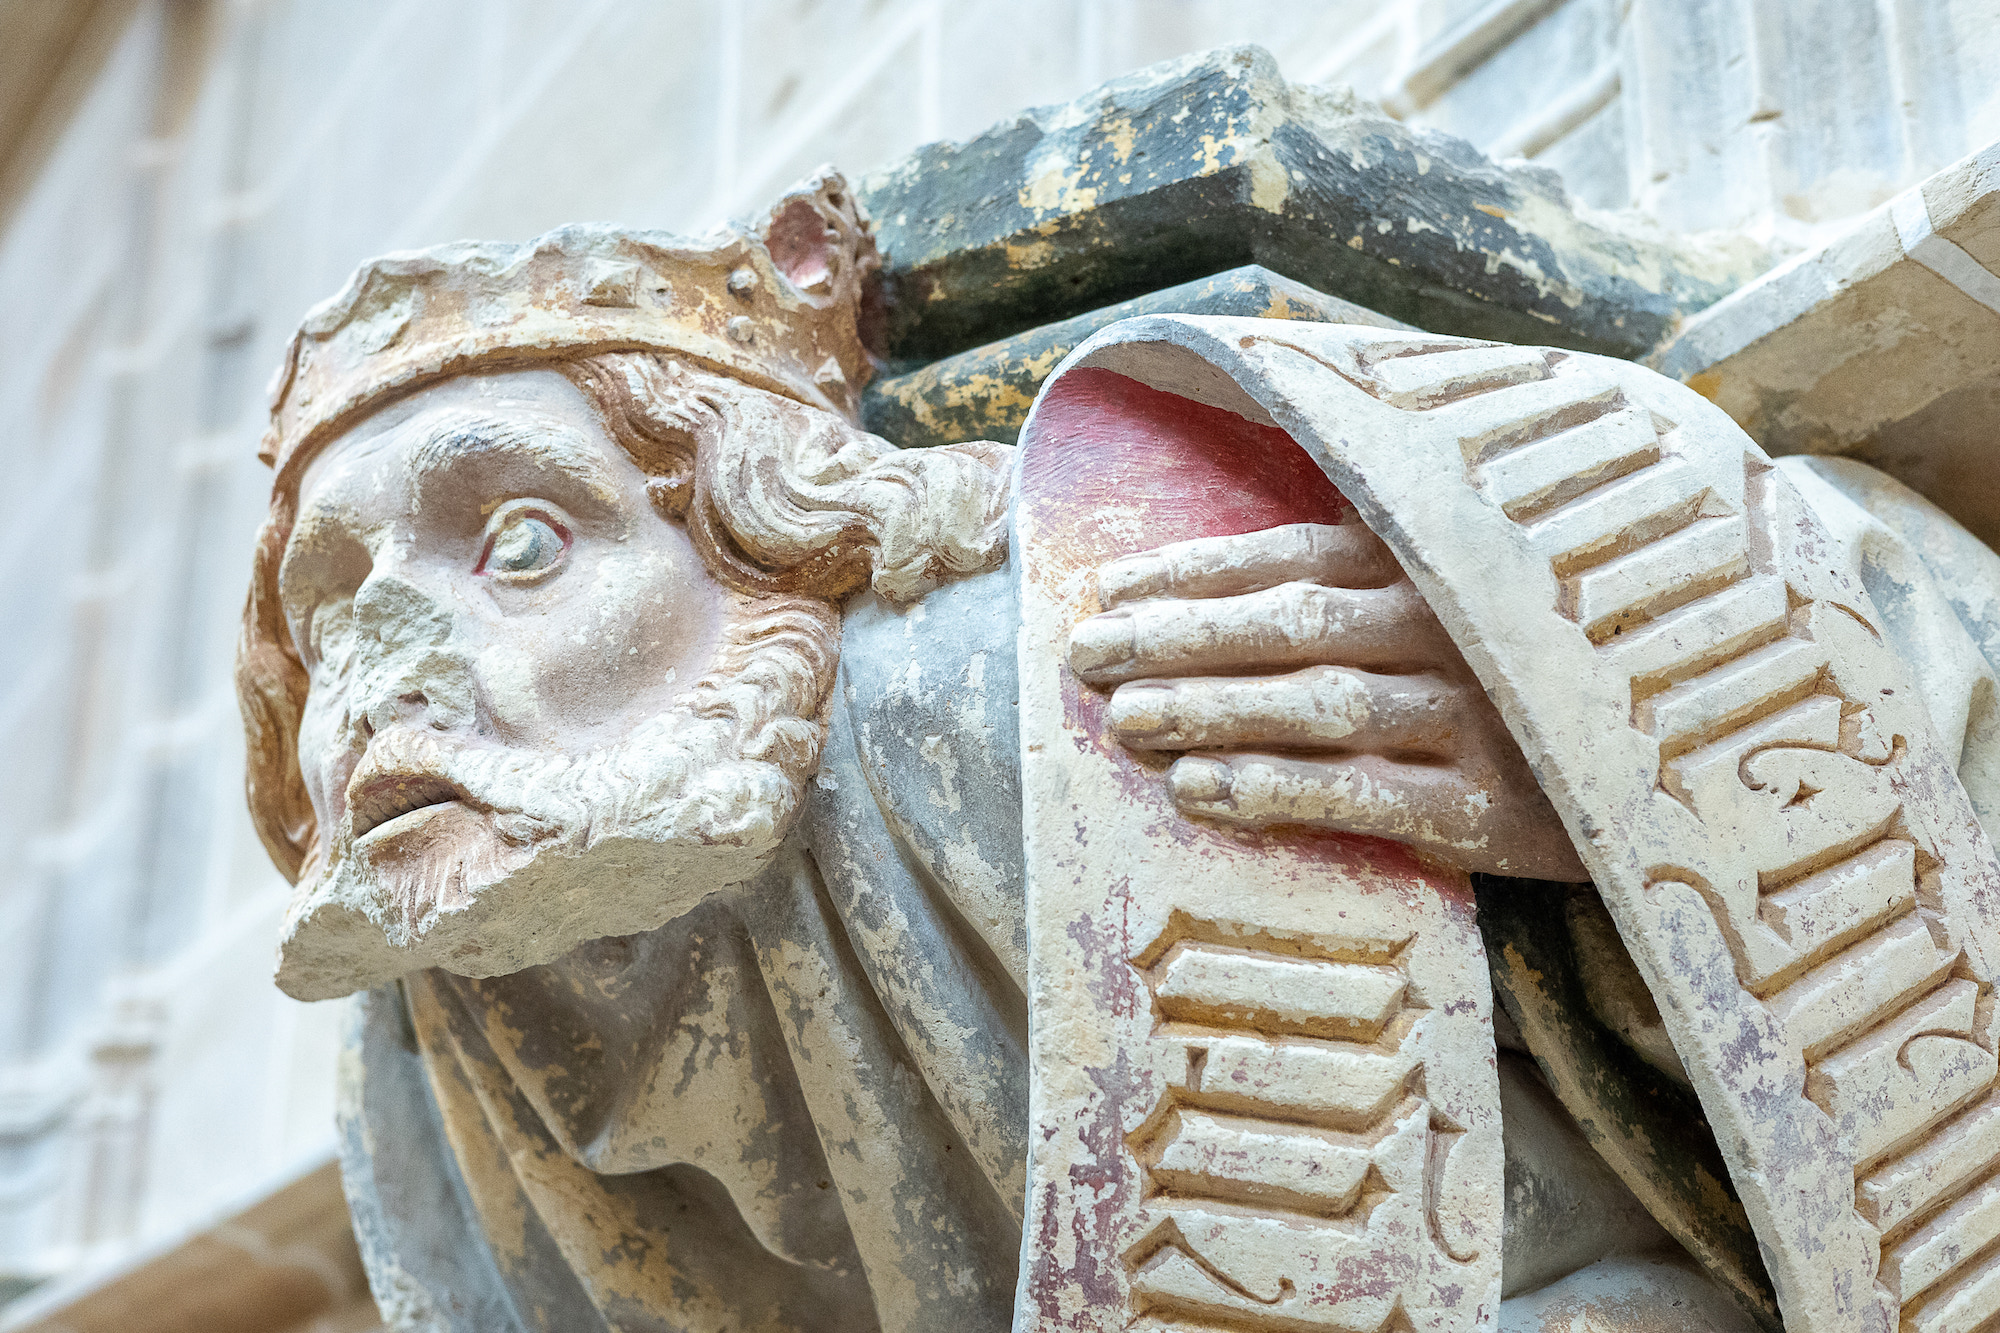 Console du prophète David dans la chapelle Jean de Bourbon. Photo service de presse. © Mollygraphy – CMN